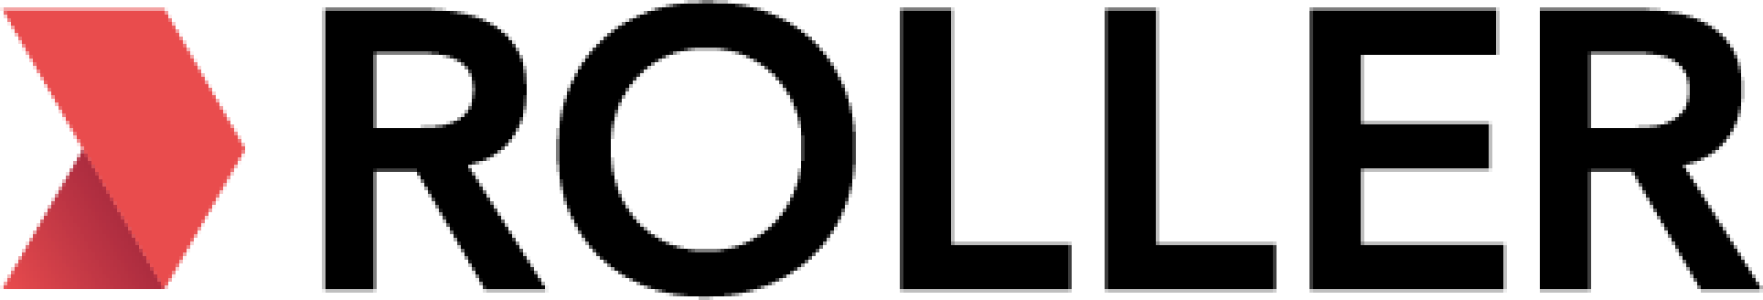 شعار برنامج الرول